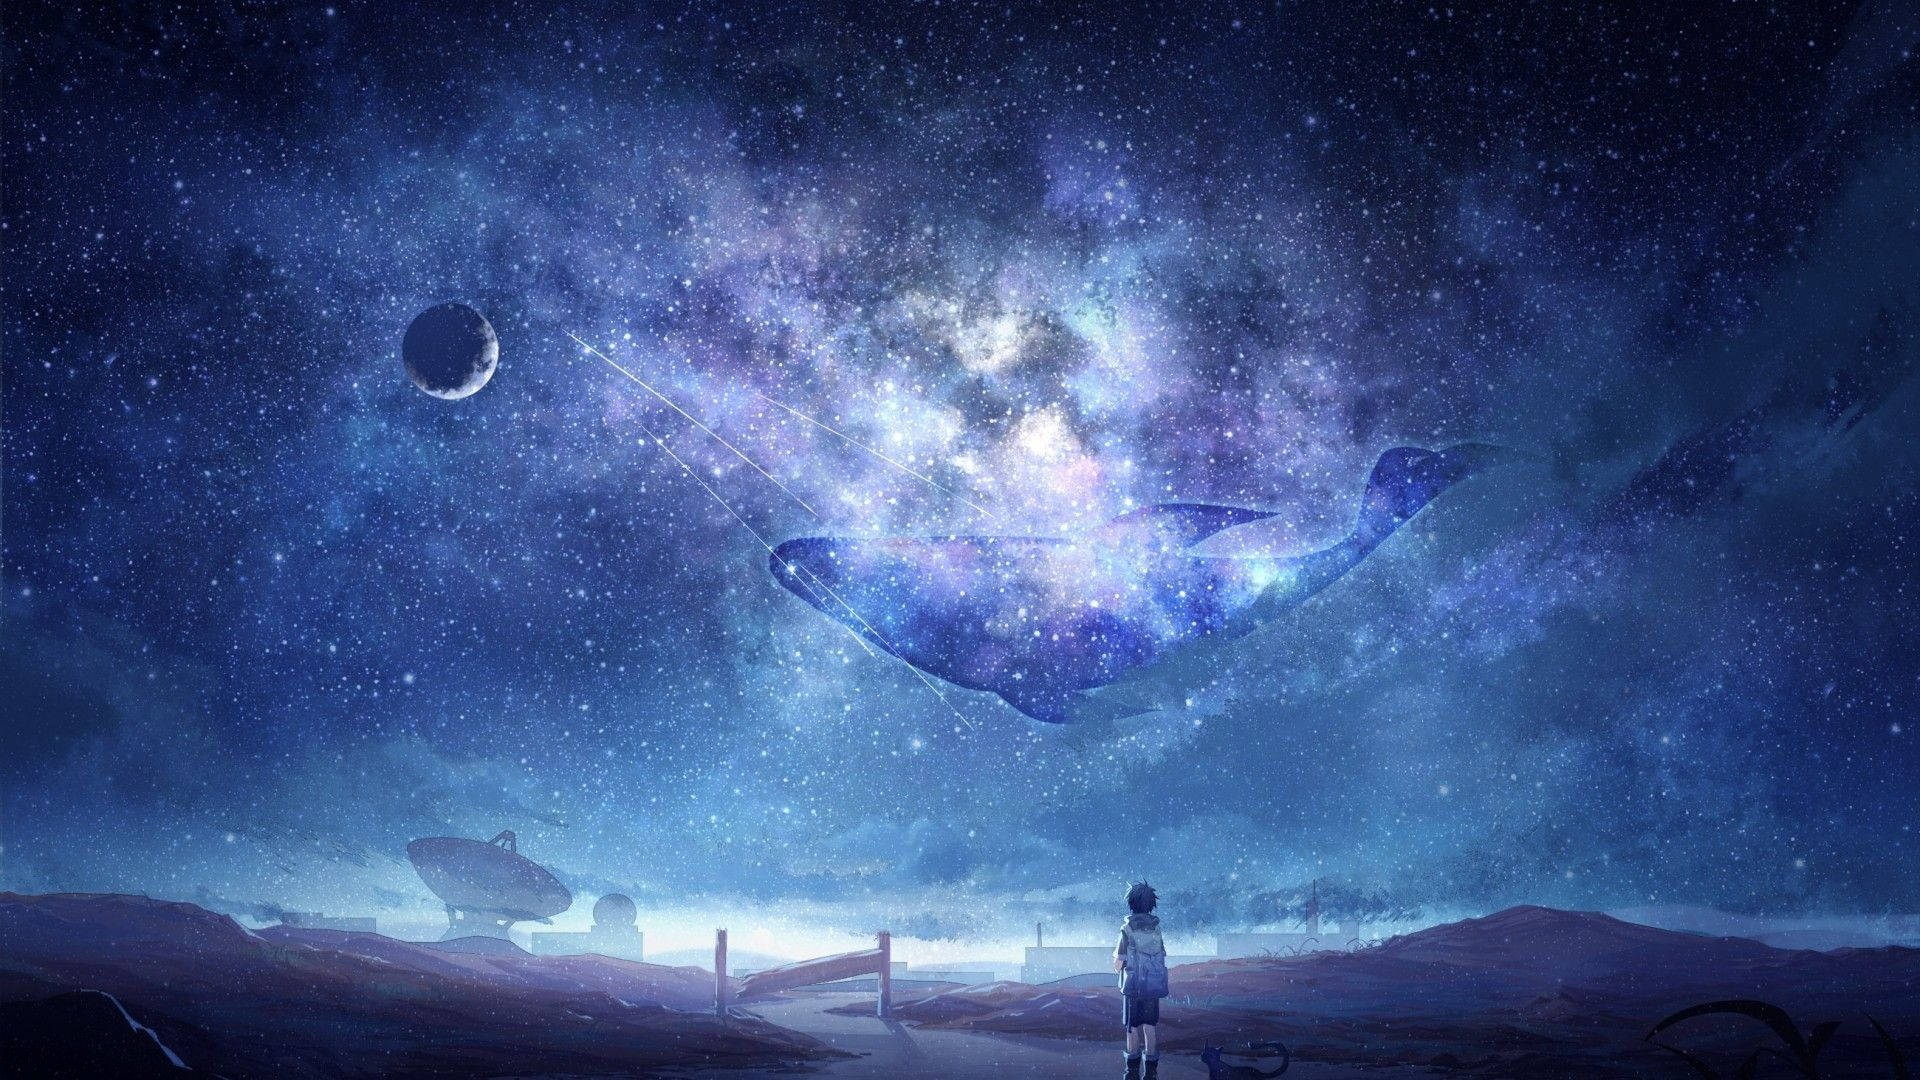 Anime bầu trời đêm thật kỳ ảo và phong phú. Những hình ảnh anime bầu trời đêm luôn mang lại cảm giác thật ngọt ngào và lãng mạn. Hãy khám phá một thế giới huyền bí trong hình ảnh anime bầu trời đêm đầy âm nhạc và cảm xúc!